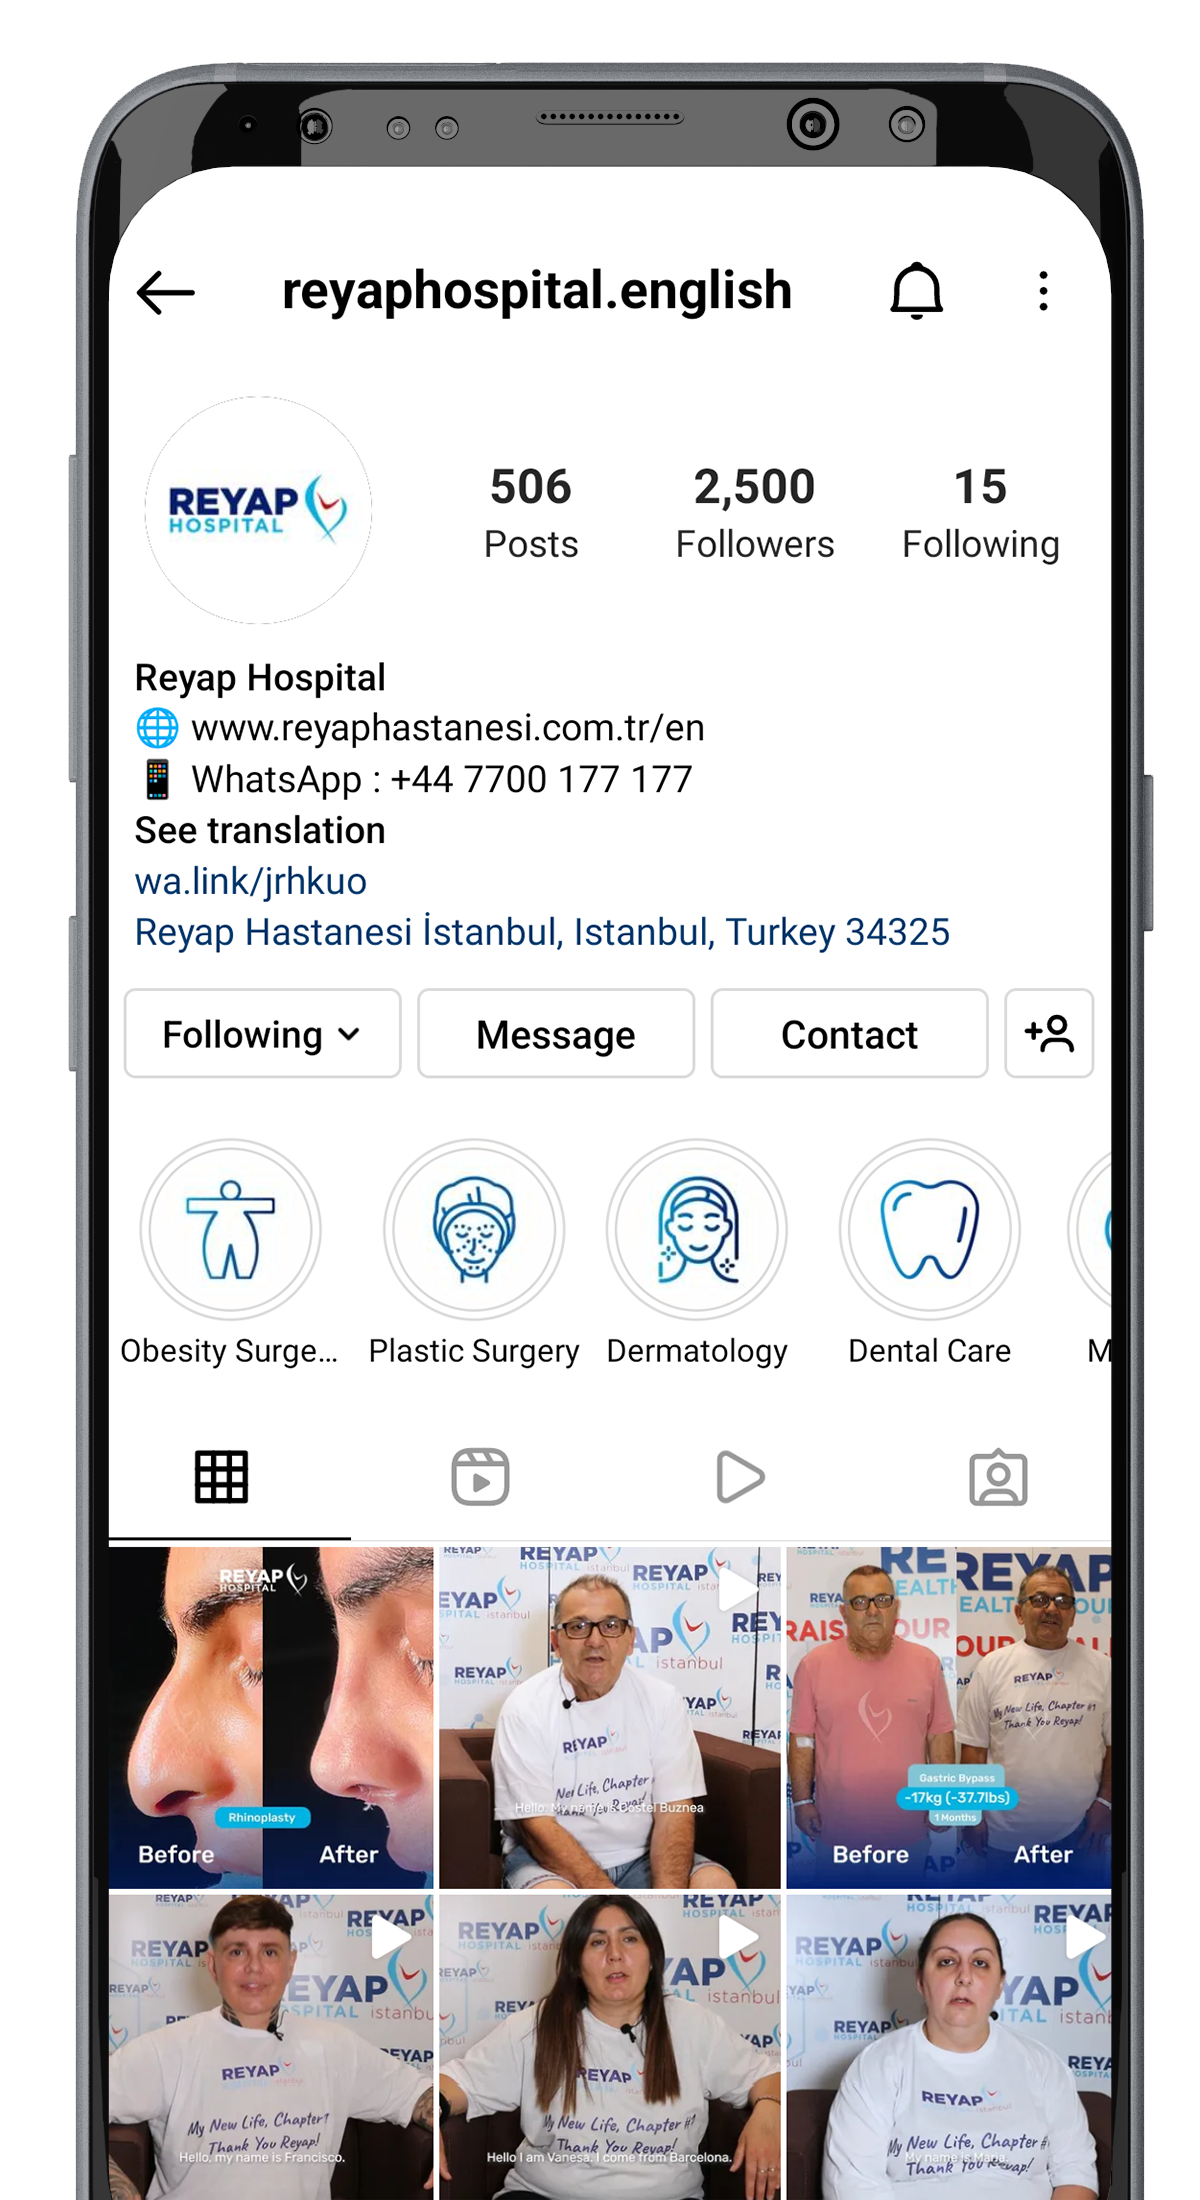 Reyap Hospital Instagram Image Embedded Inside a Mobile Phone